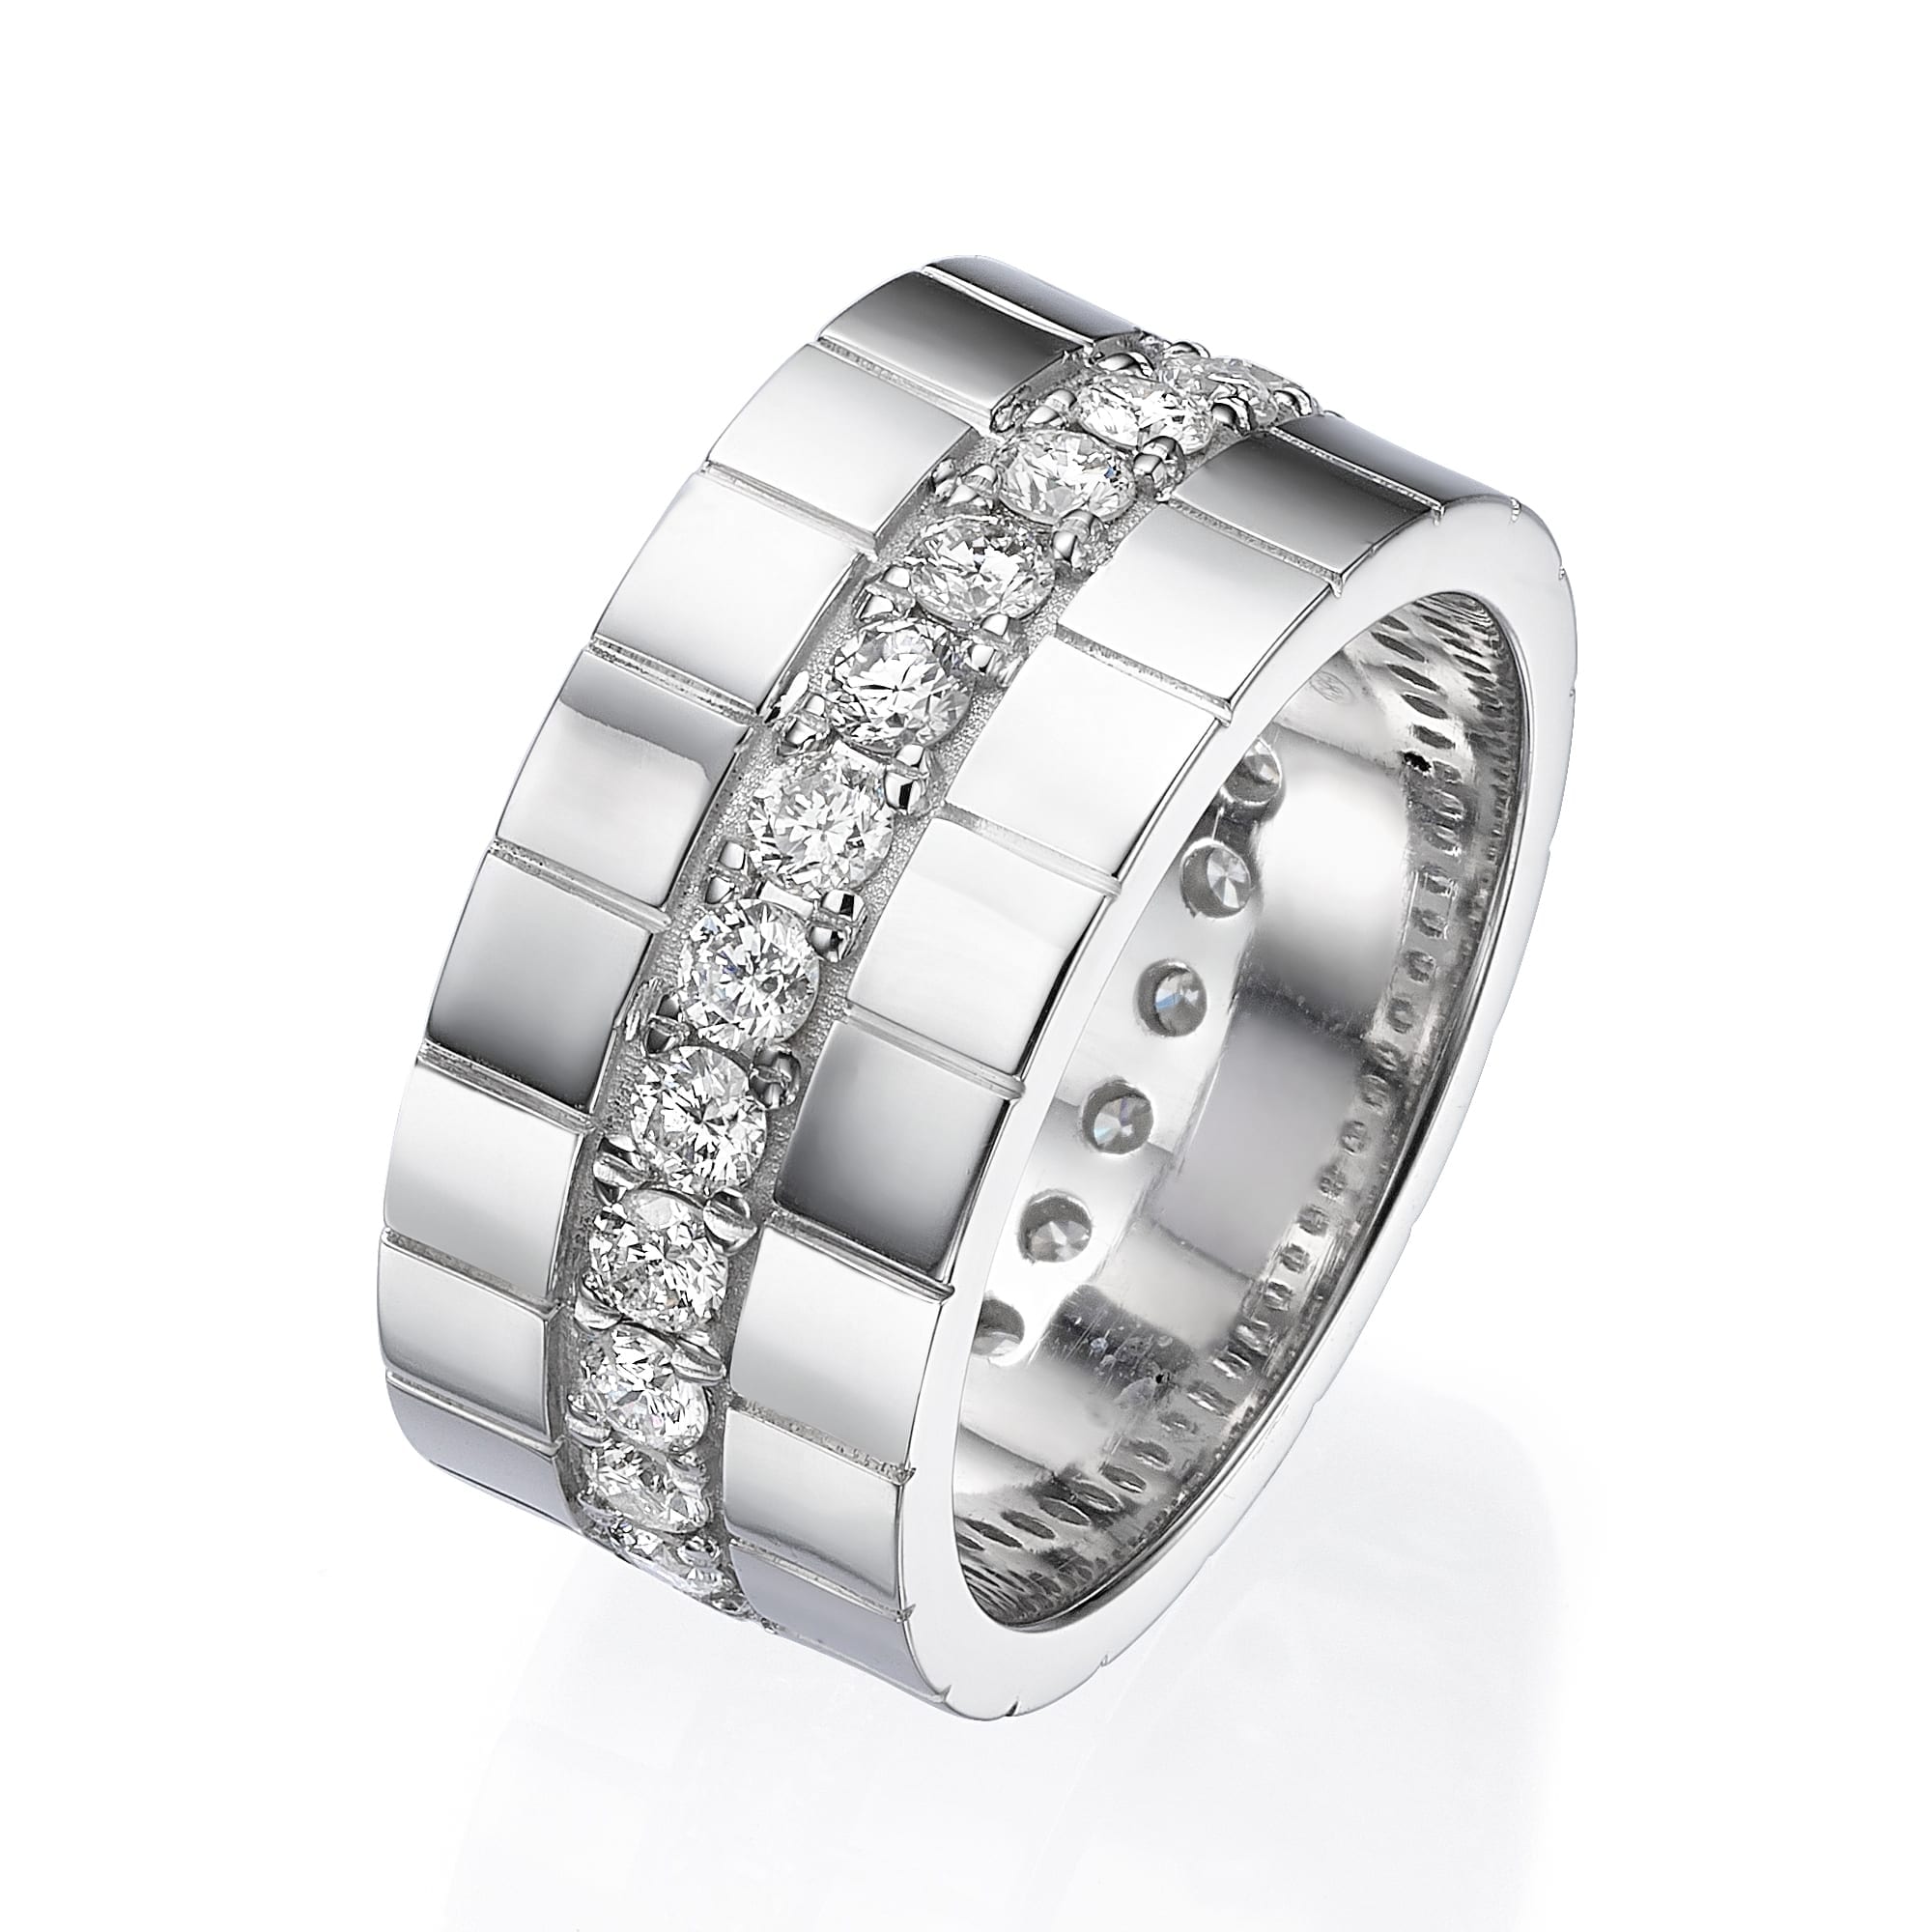 משפט עם שם מוצר: טבעת יהלומים לגבר דגם אריה אלגנטי עם רצועה מרכזית של יהלומים נוצצים עטופה בין מקטעים מתכתיים אלגנטיים.